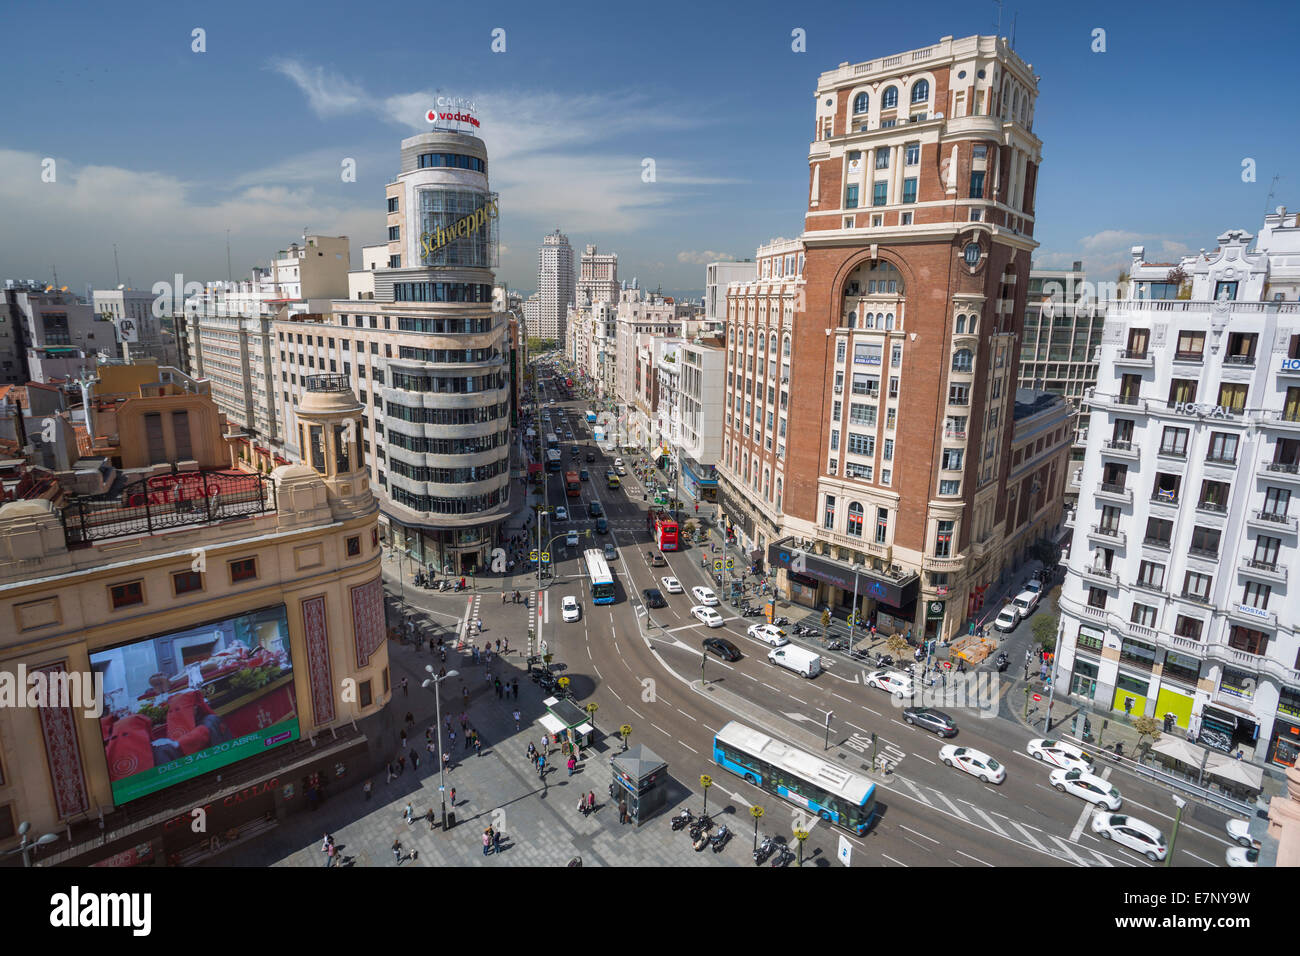 Avenue, Callao, ville, Gran Via, Madrid, Espagne, Europe, Square, l'architecture, le centre-ville, le modernisme, le tourisme, voyages Banque D'Images